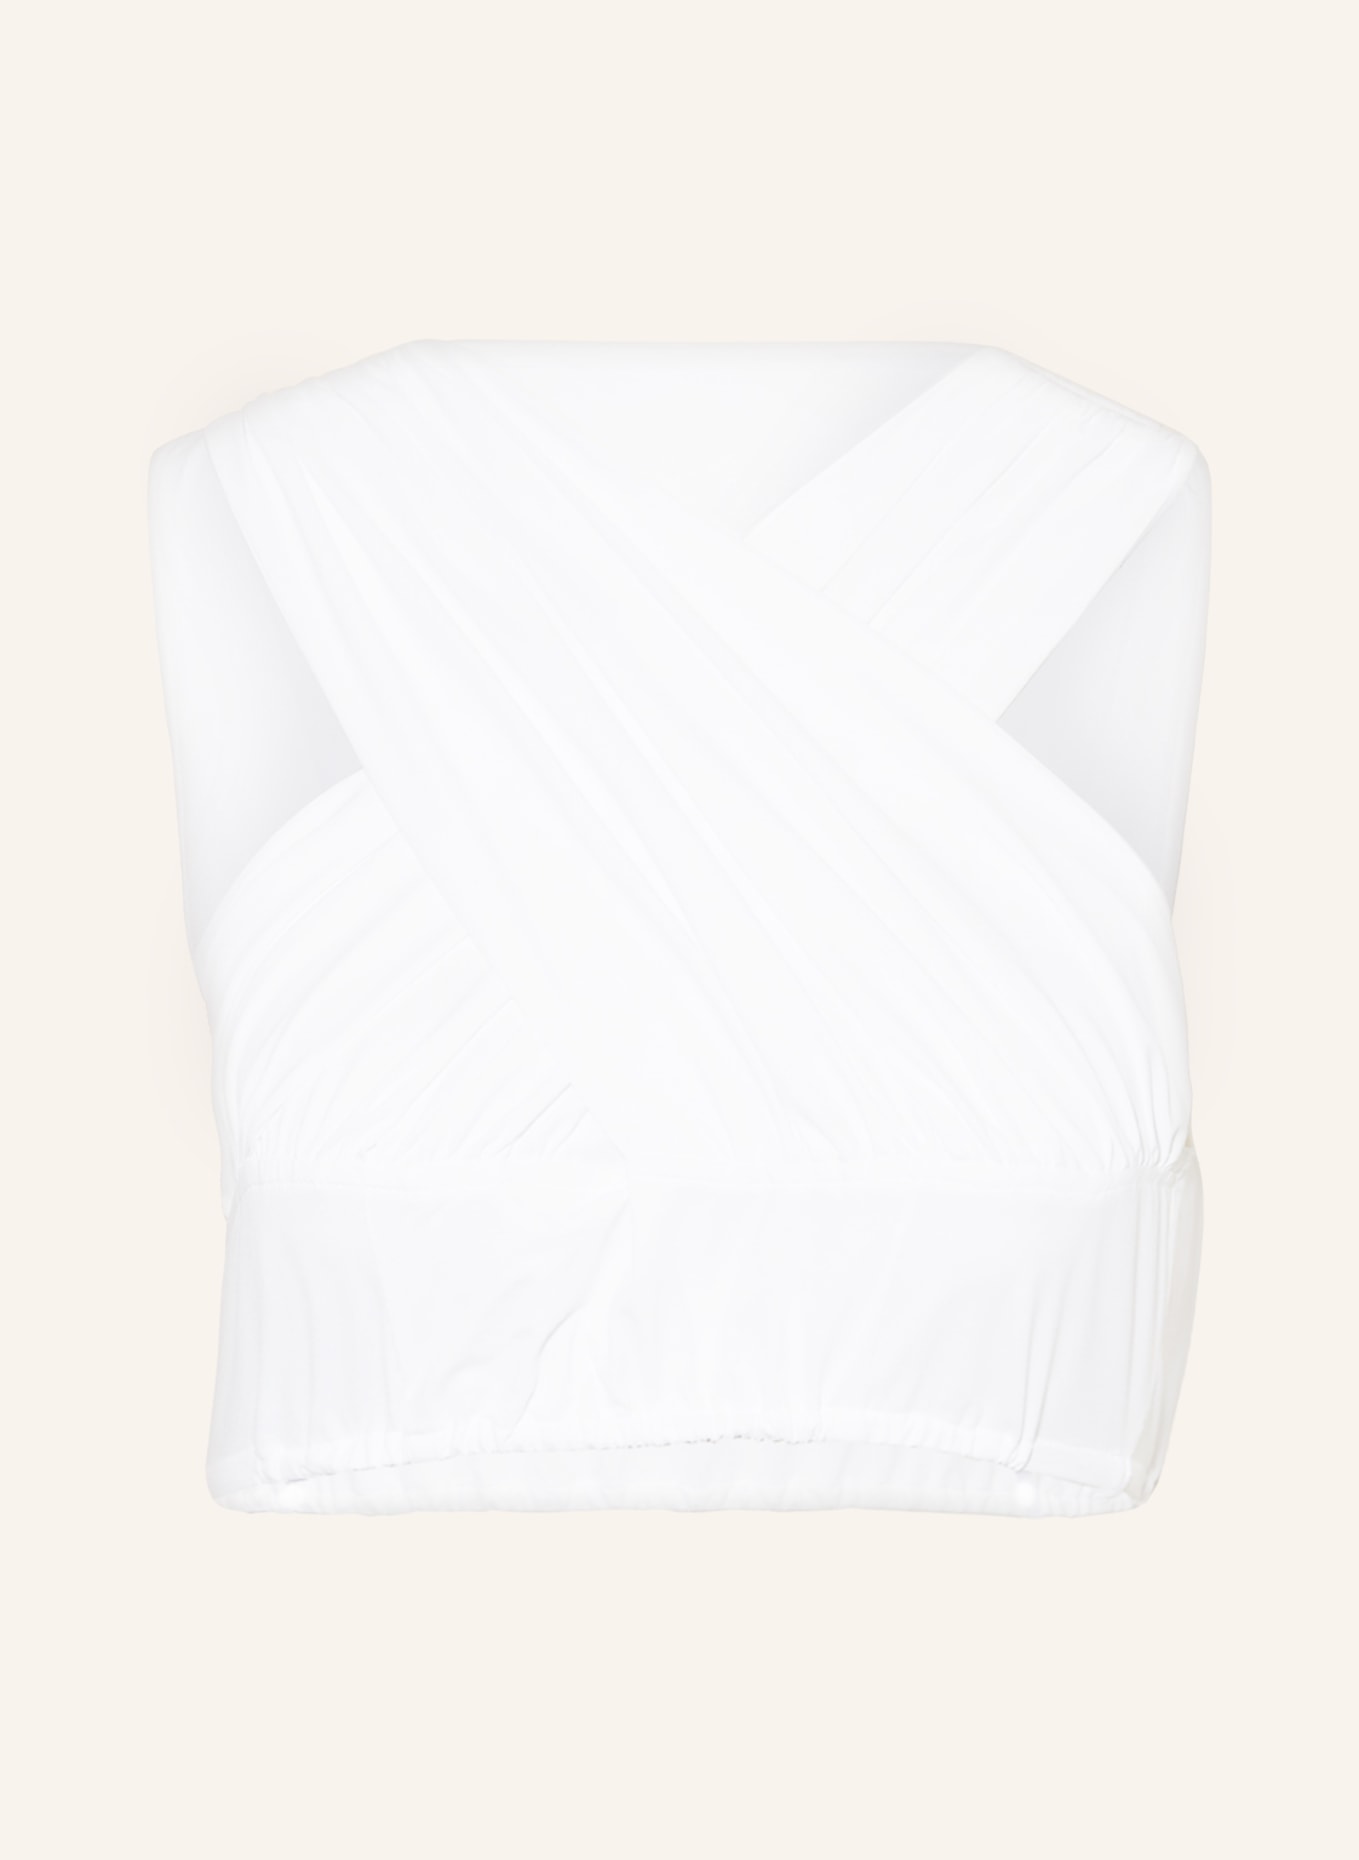 SPORTALM Dirndl blouse, Color: WHITE (Image 1)